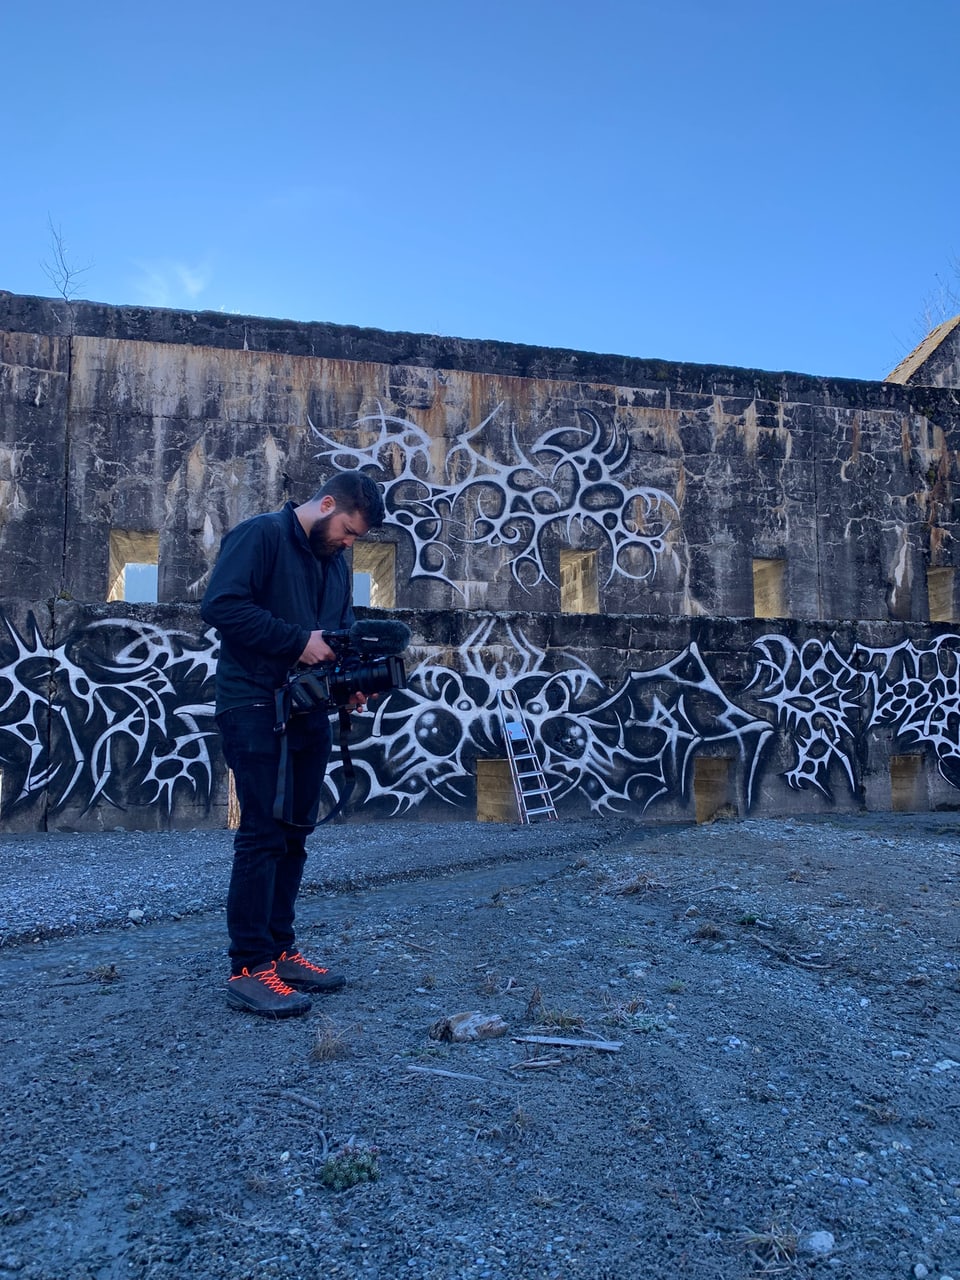 Kameramann vor Graffiti-Wand